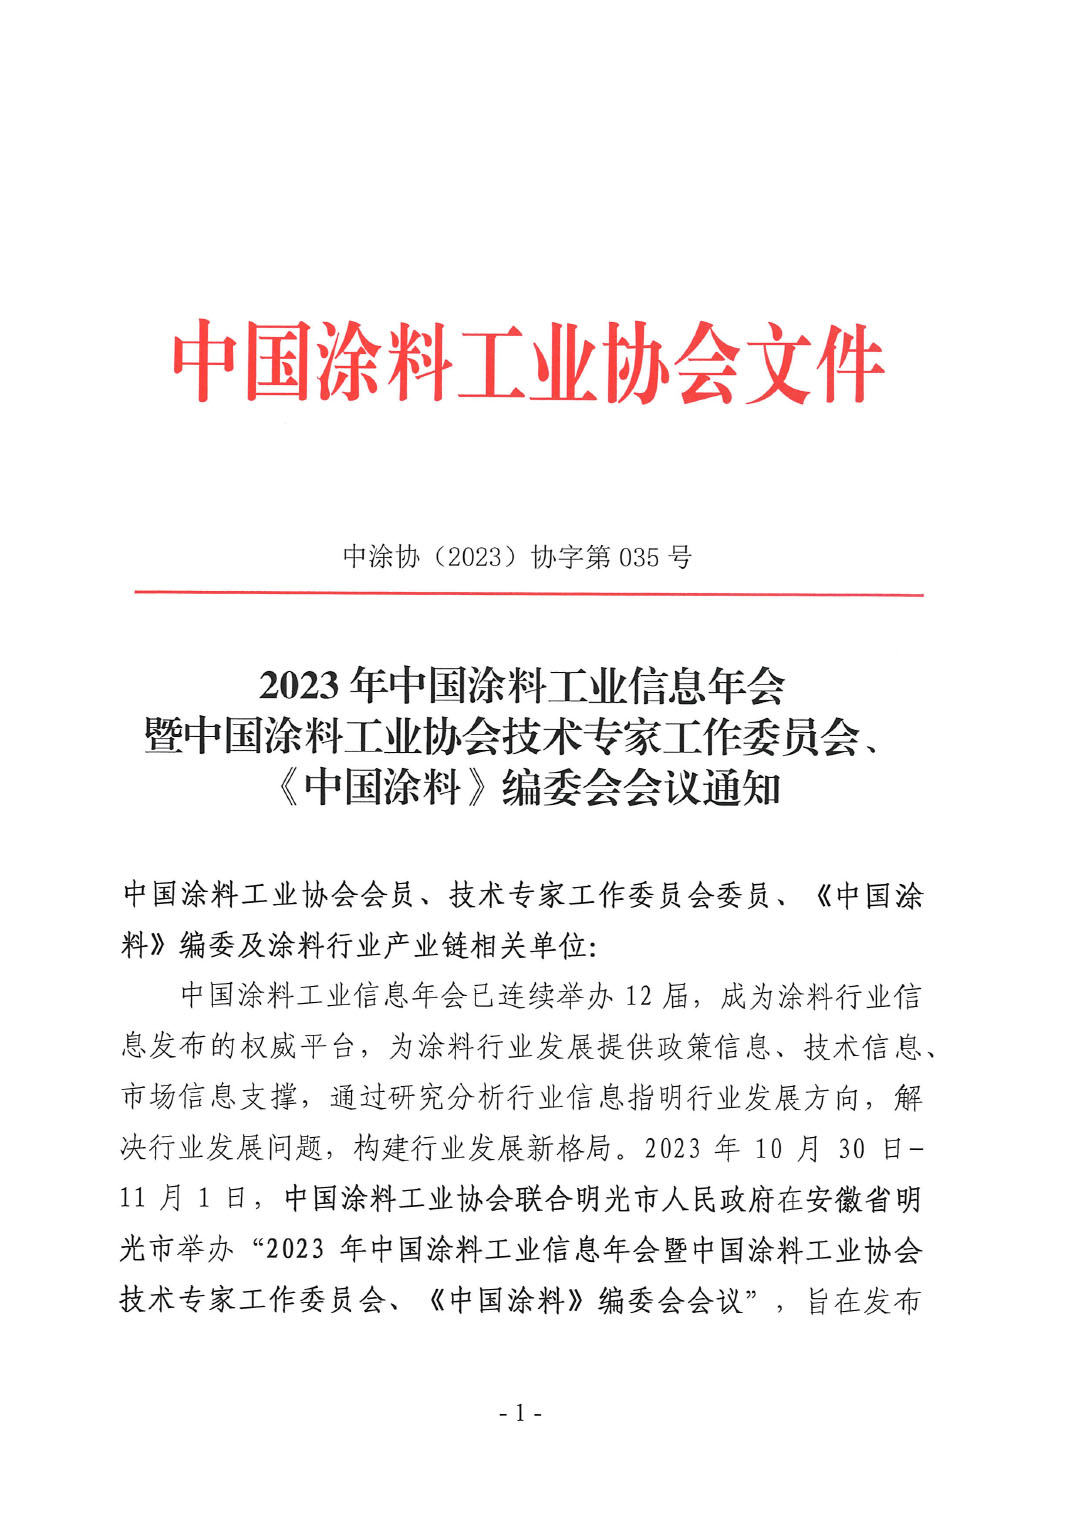 2023年中國涂料工業信息年會通知（明光）1017-1